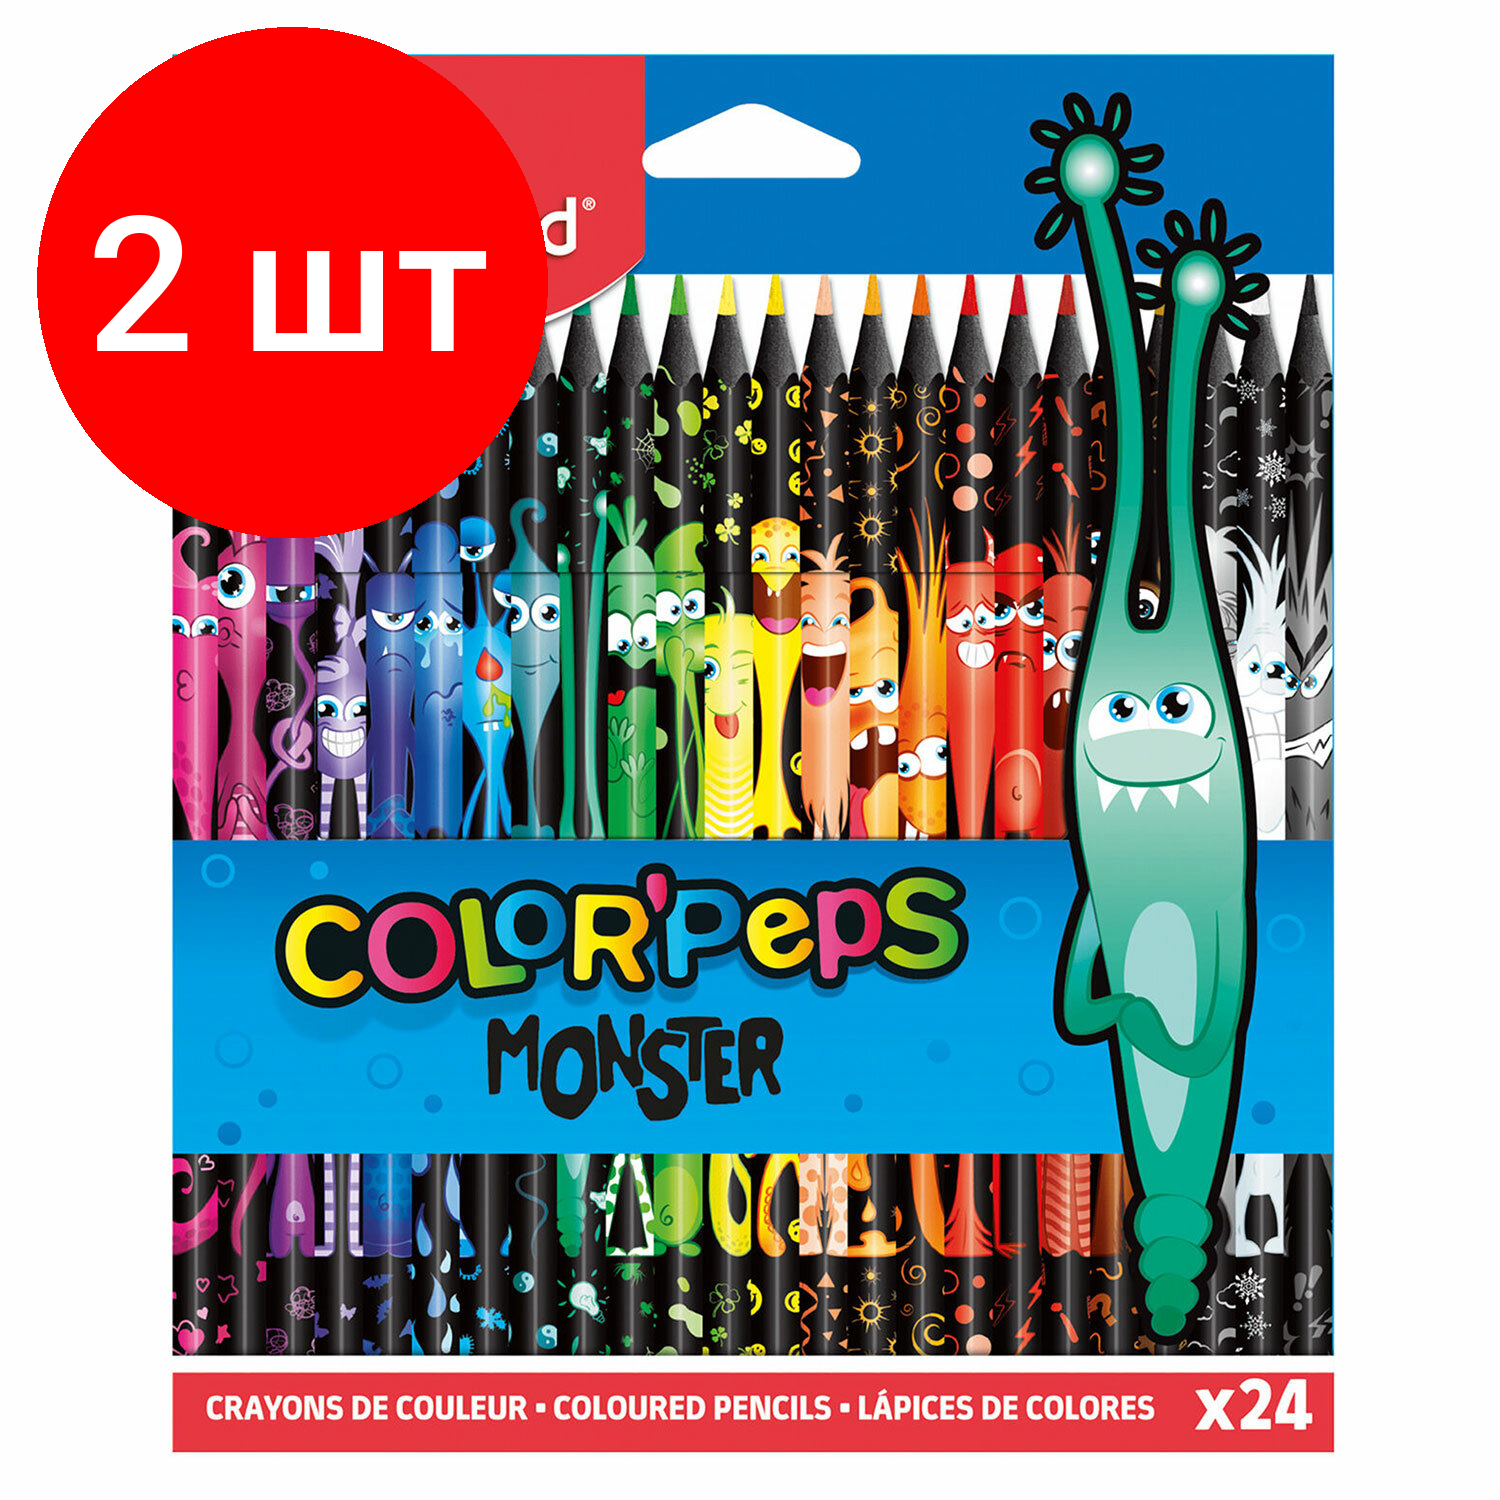 Комплект 2 шт, Карандаши цветные MAPED COLOR PEP'S Black Monster, набор 24 цвета, пластиковый корпус, 862624